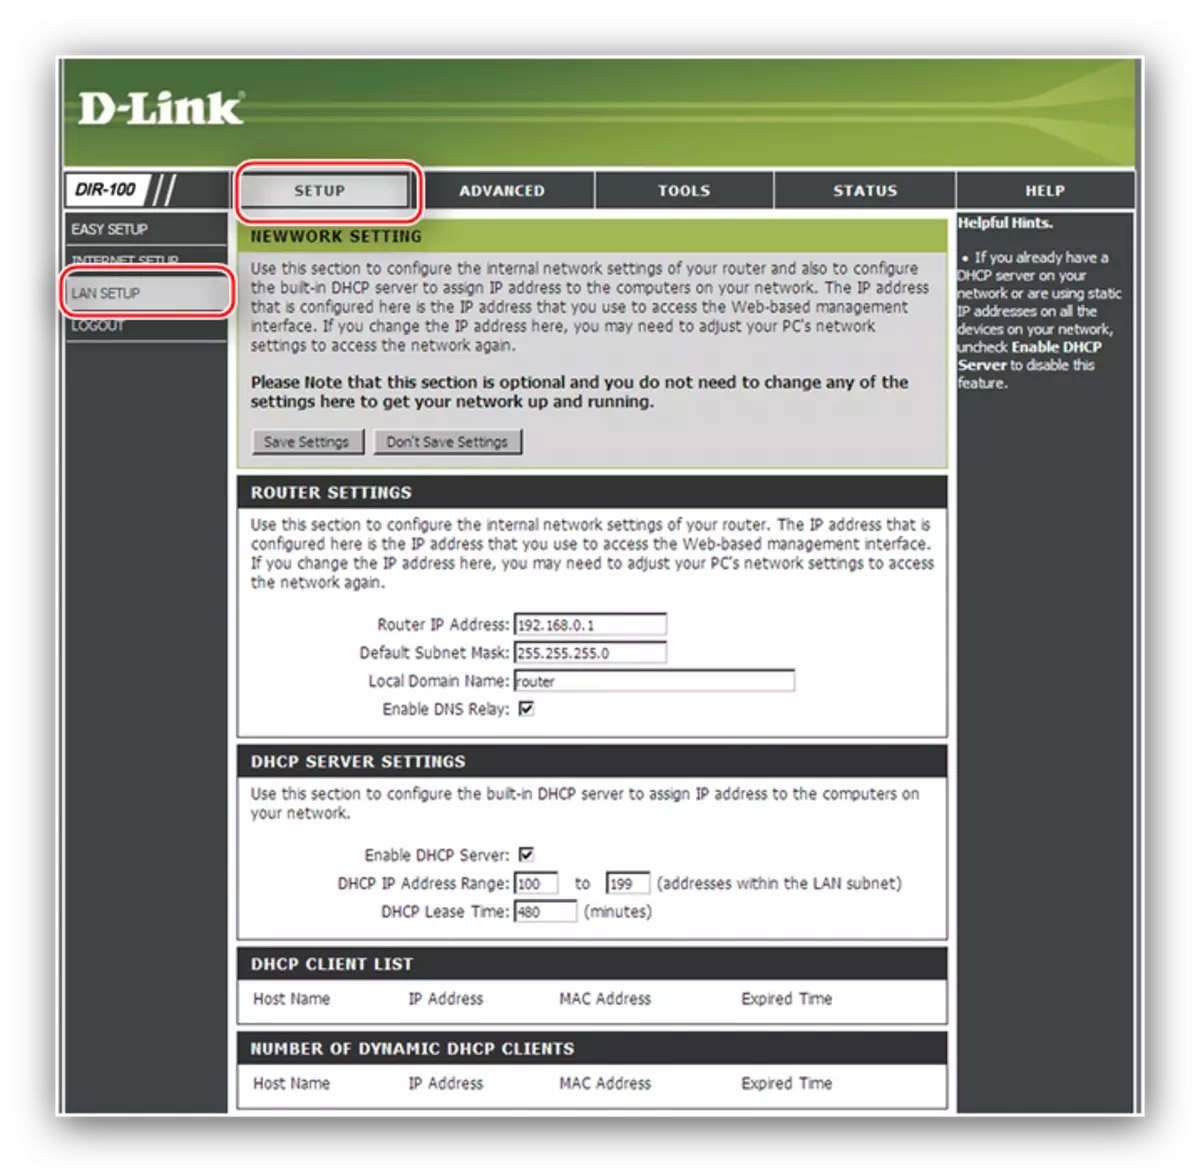 Przejdź do konfiguracji LAN, aby skonfigurować router D-link DIL-100